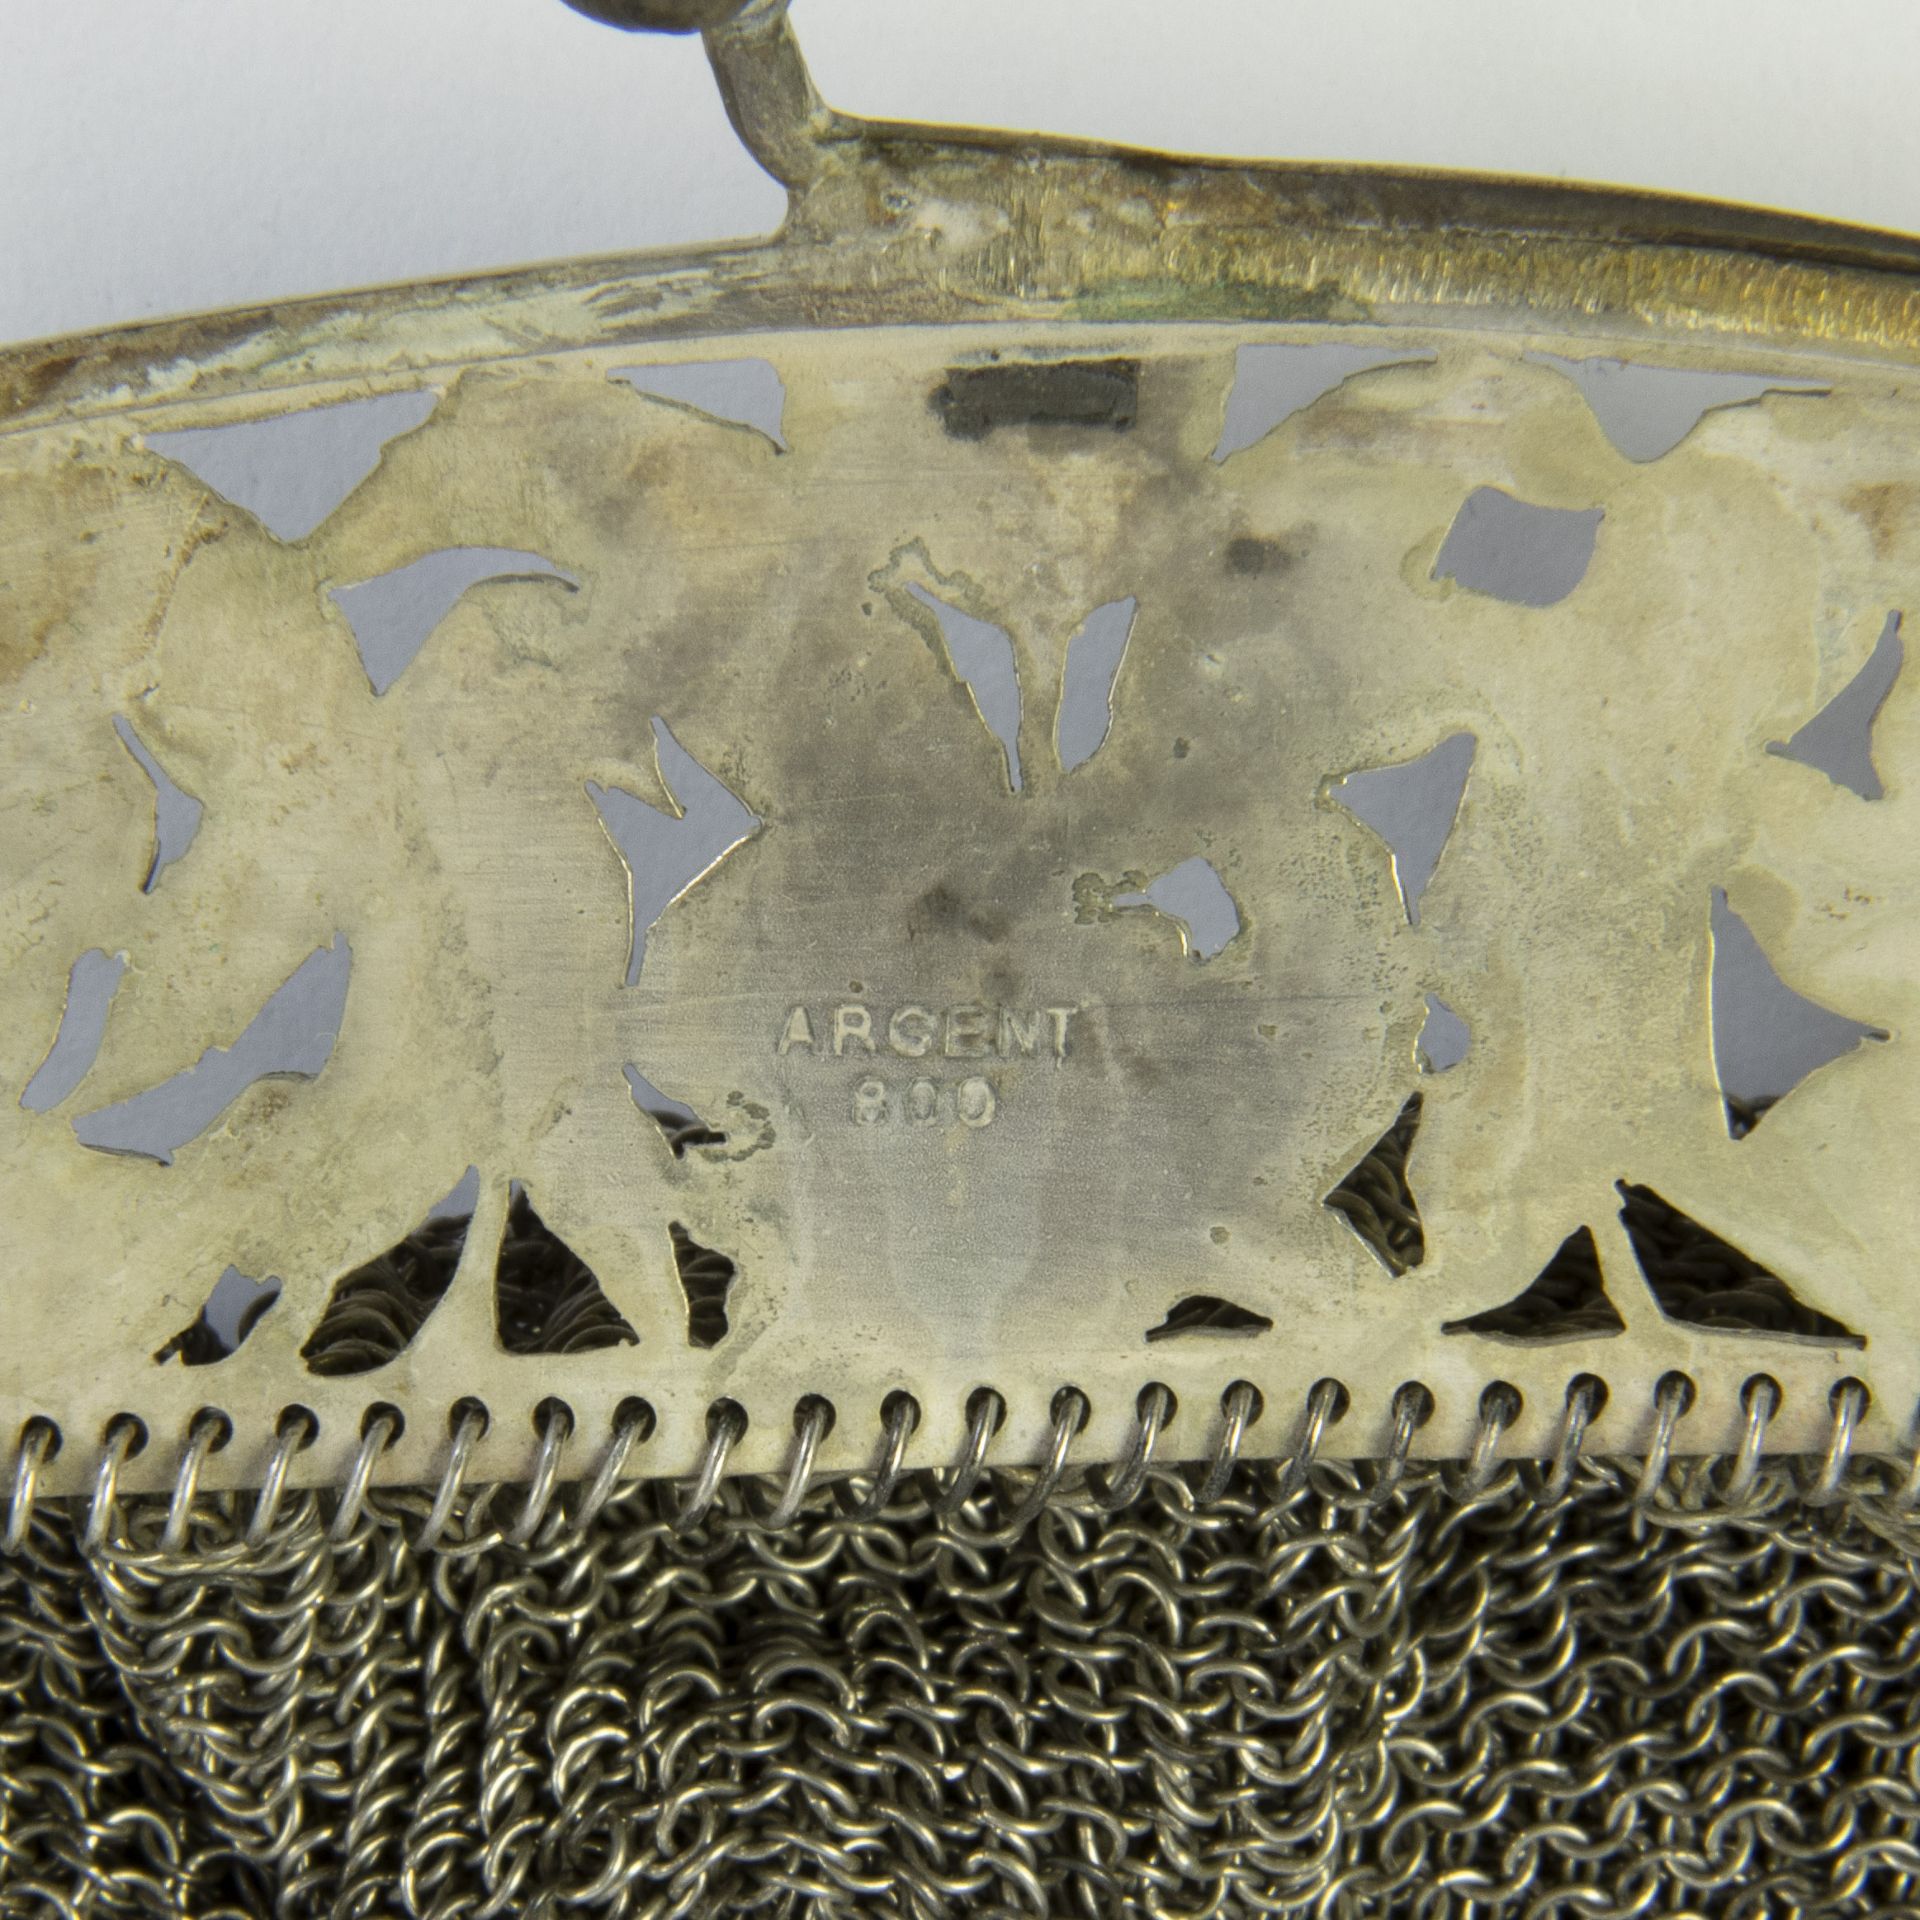 A silver Art Nouveau handbag, marked Argent 800 and purse - Bild 2 aus 3